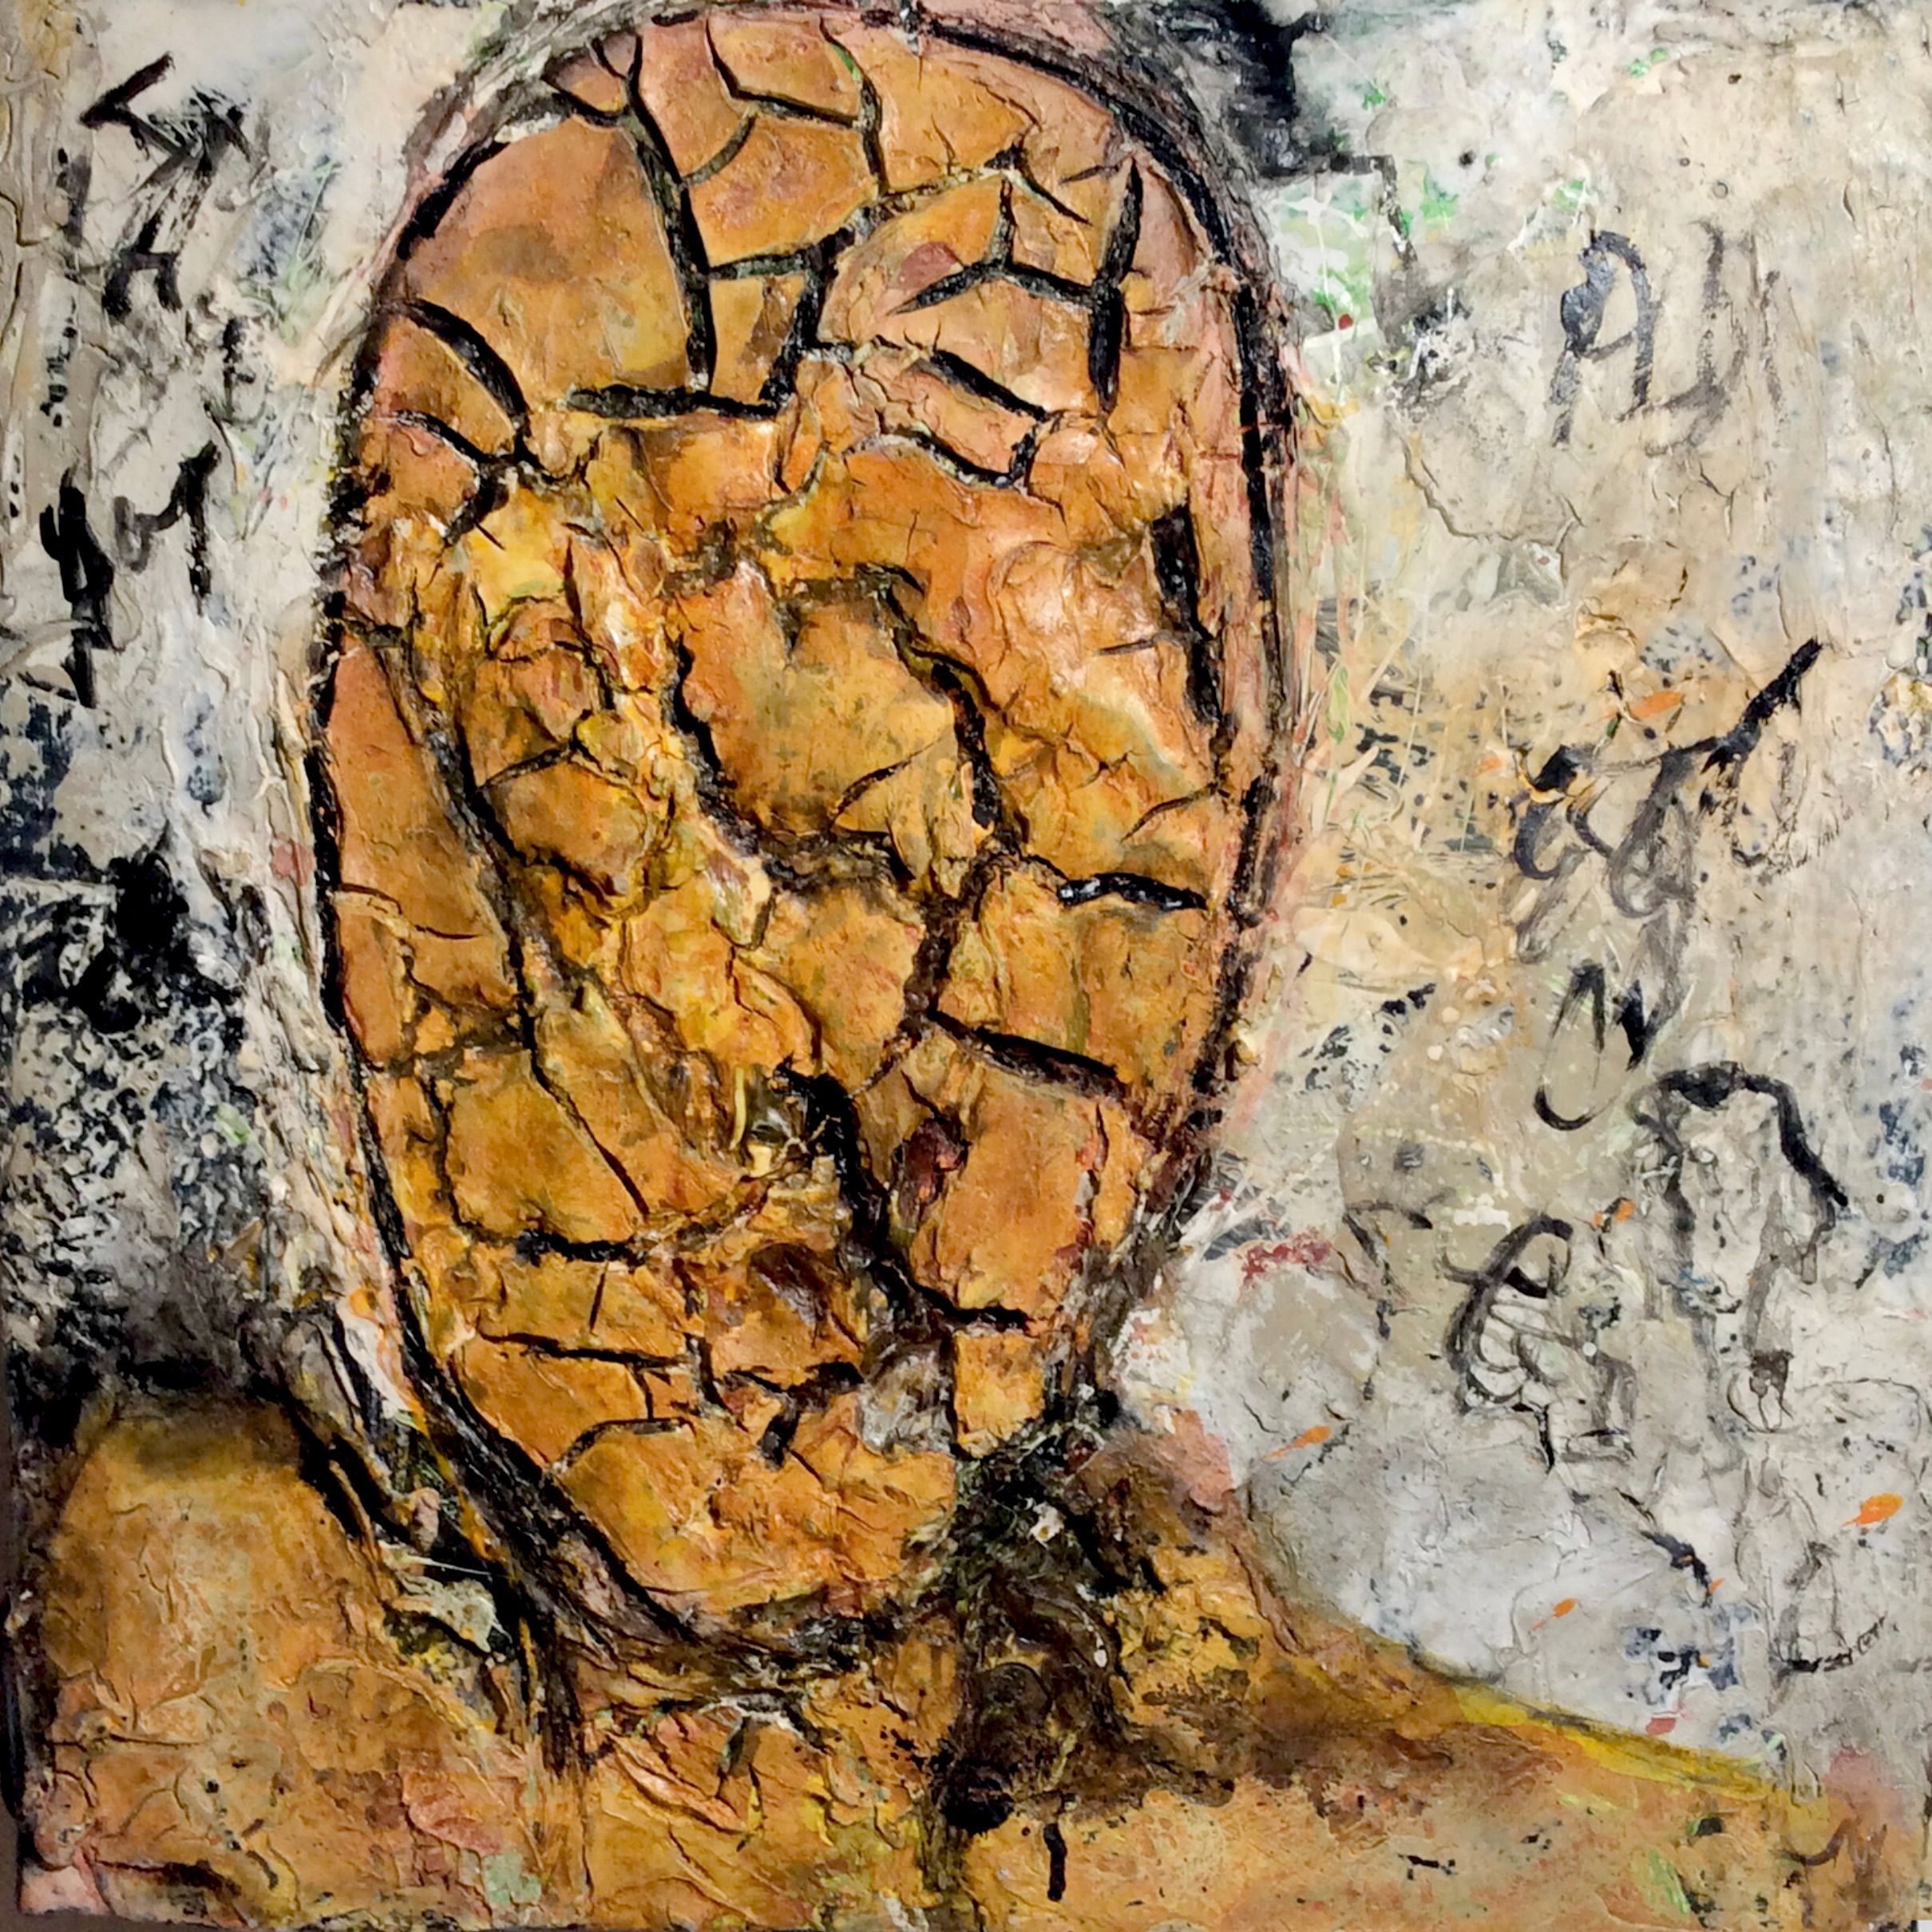 Les objets muraux "sans titre" d'Ilona Schmidt de la série Paysages de visages montrent un homme/visage. La palette de couleurs du tableau se compose de différentes nuances de brun et d'ocre. Technique et matériaux utilisés, mastic, teinture et peinture acrylique sur toile